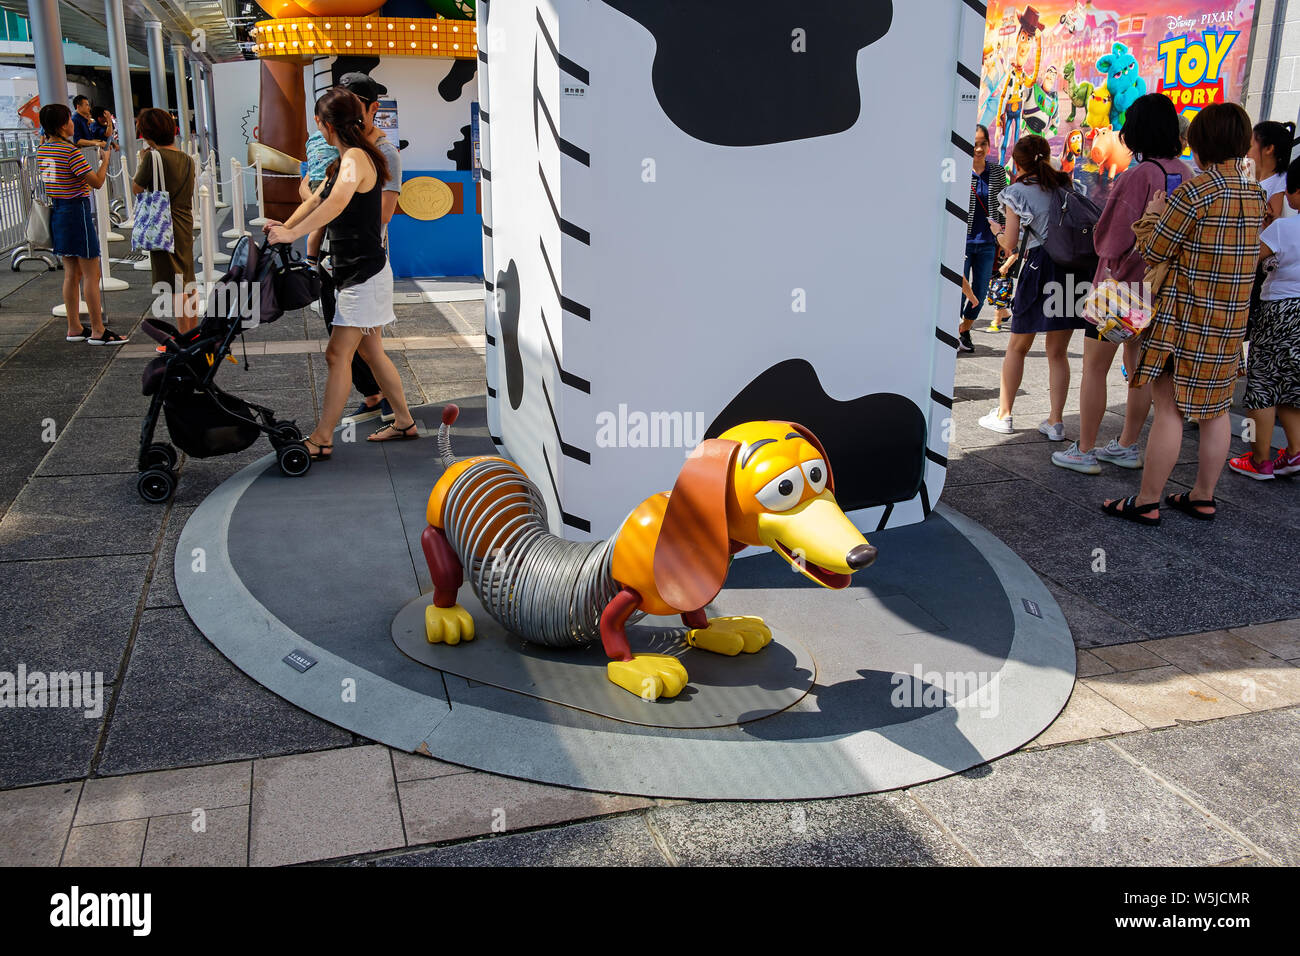 Porto di Hong Kong Cityis unendo le proprie forze con la Disney per portare "Toy Story 4" carnevale a tema con diversi giochi e sfide Foto Stock